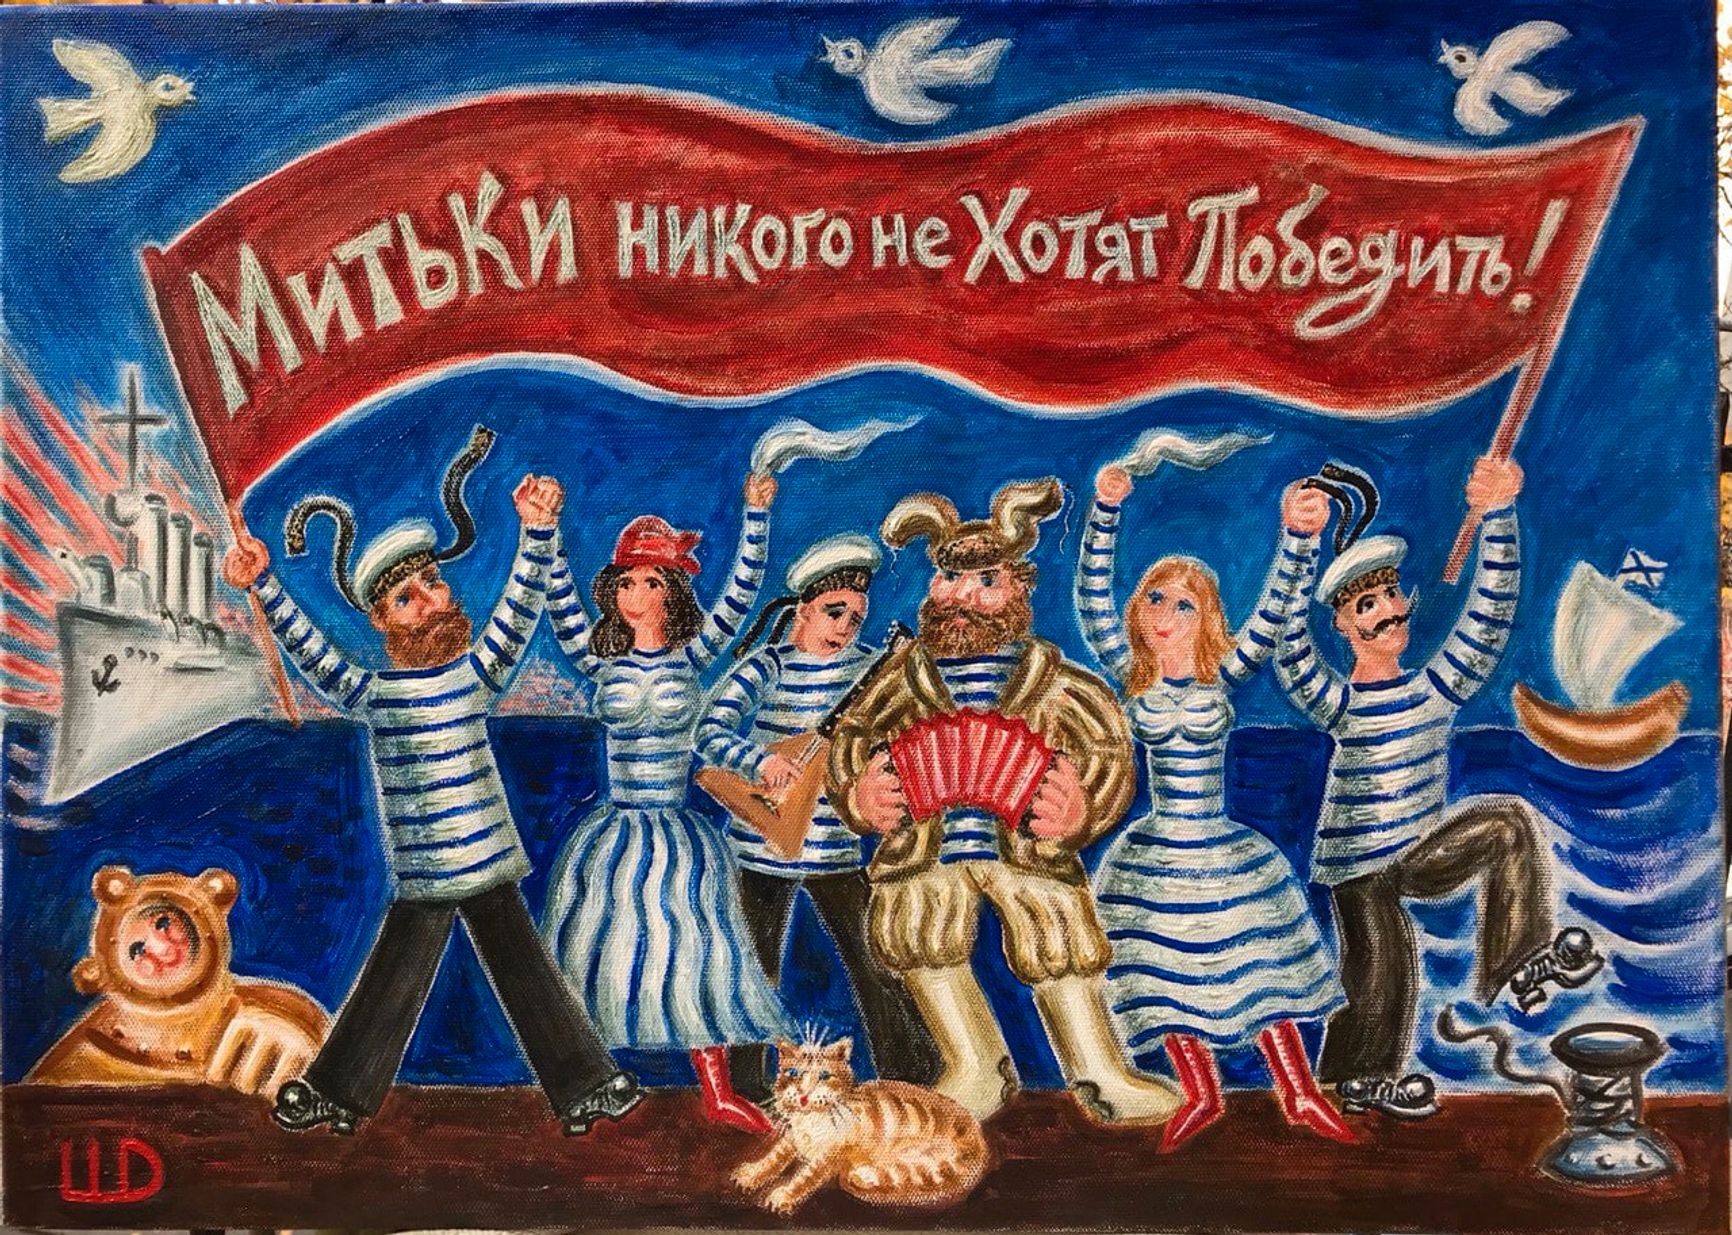 Картину с надписью «Митьки никого не хотят победить!» убрали из московского музея из-за «политического подтекста»